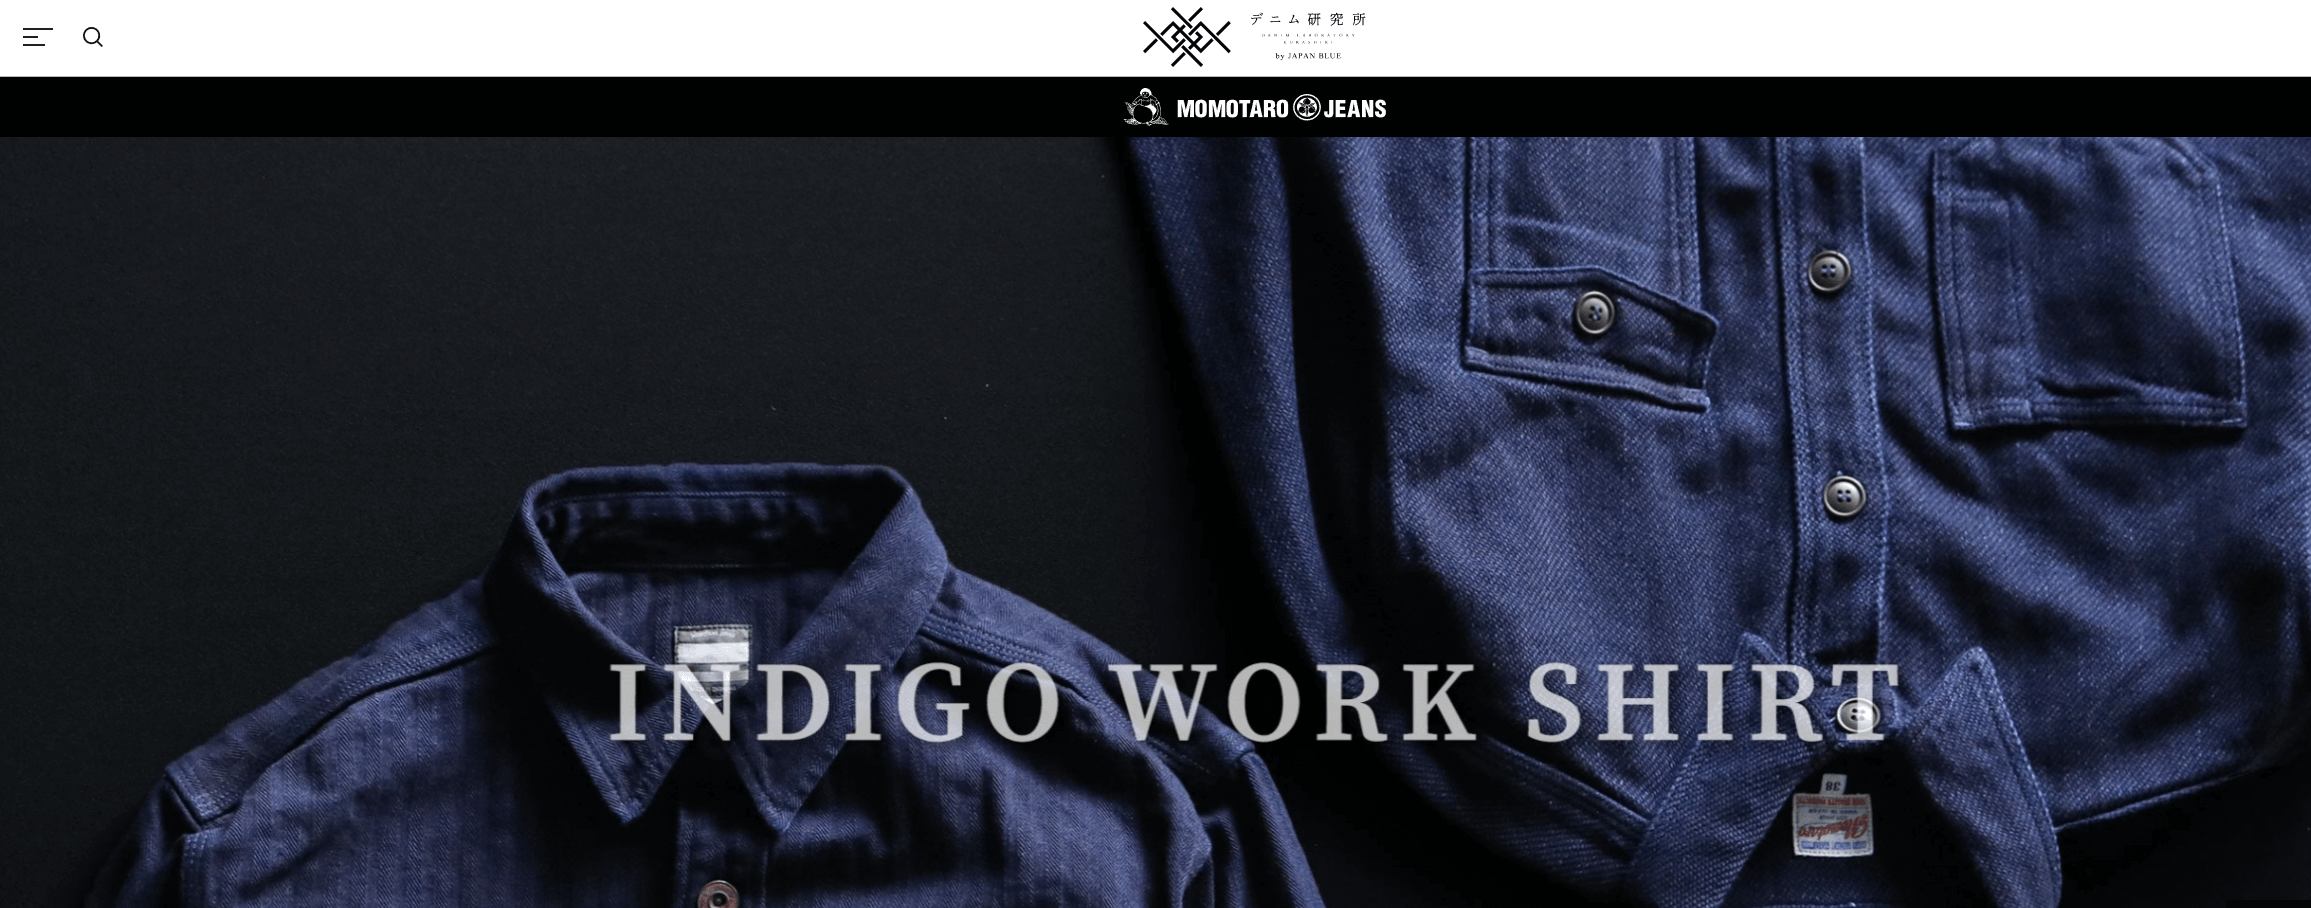 เว็บไซต์ Momotaro jeans